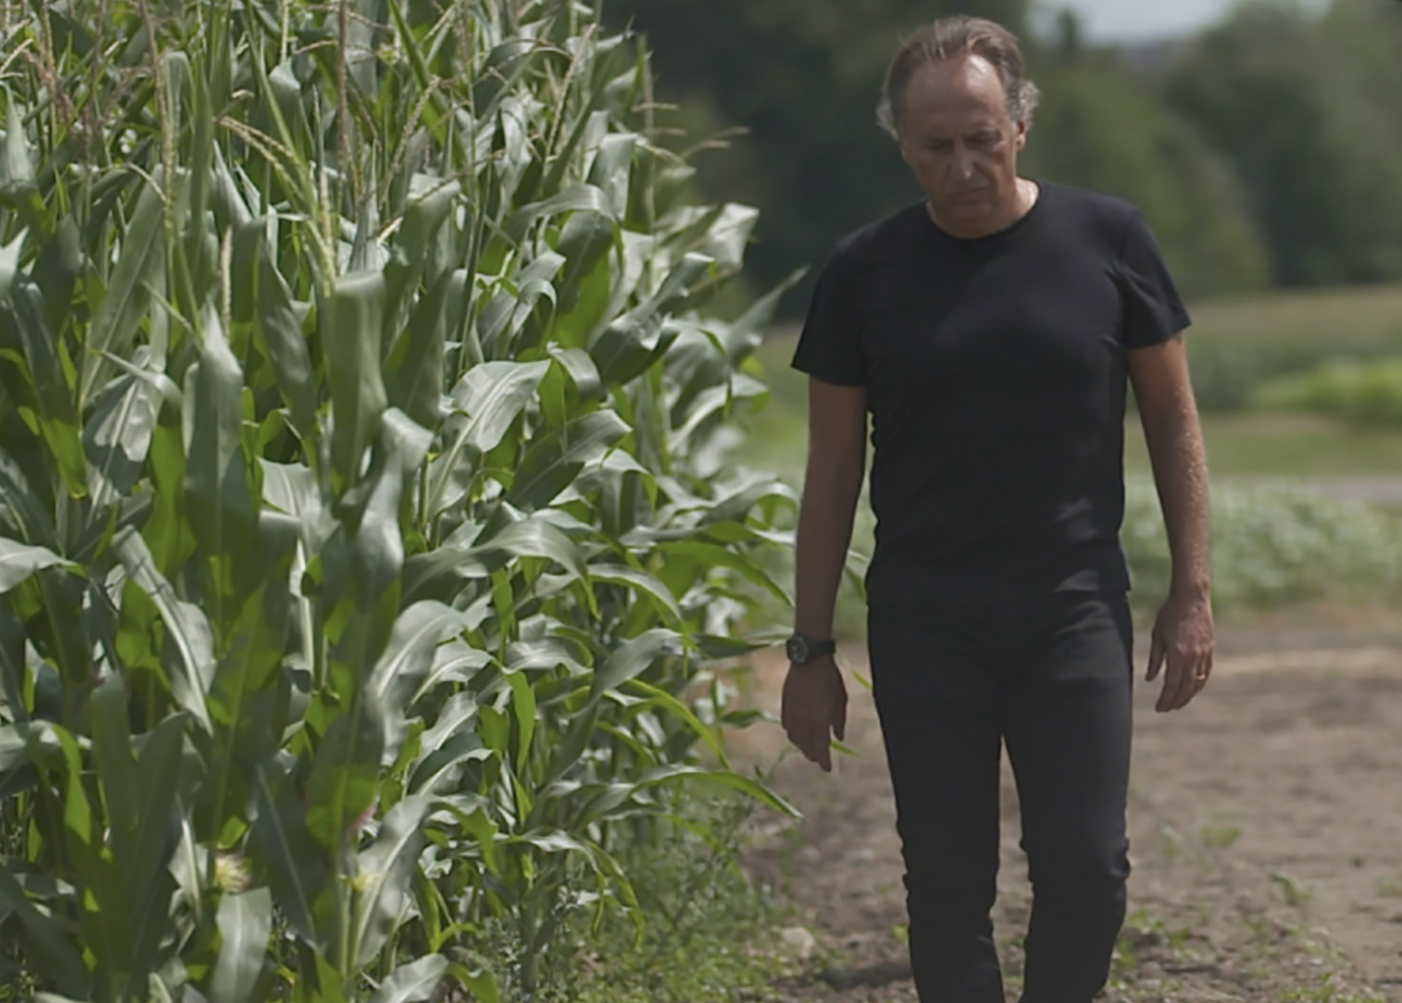 Bruno Basso in a cornfield, courtesy of Val Osowski